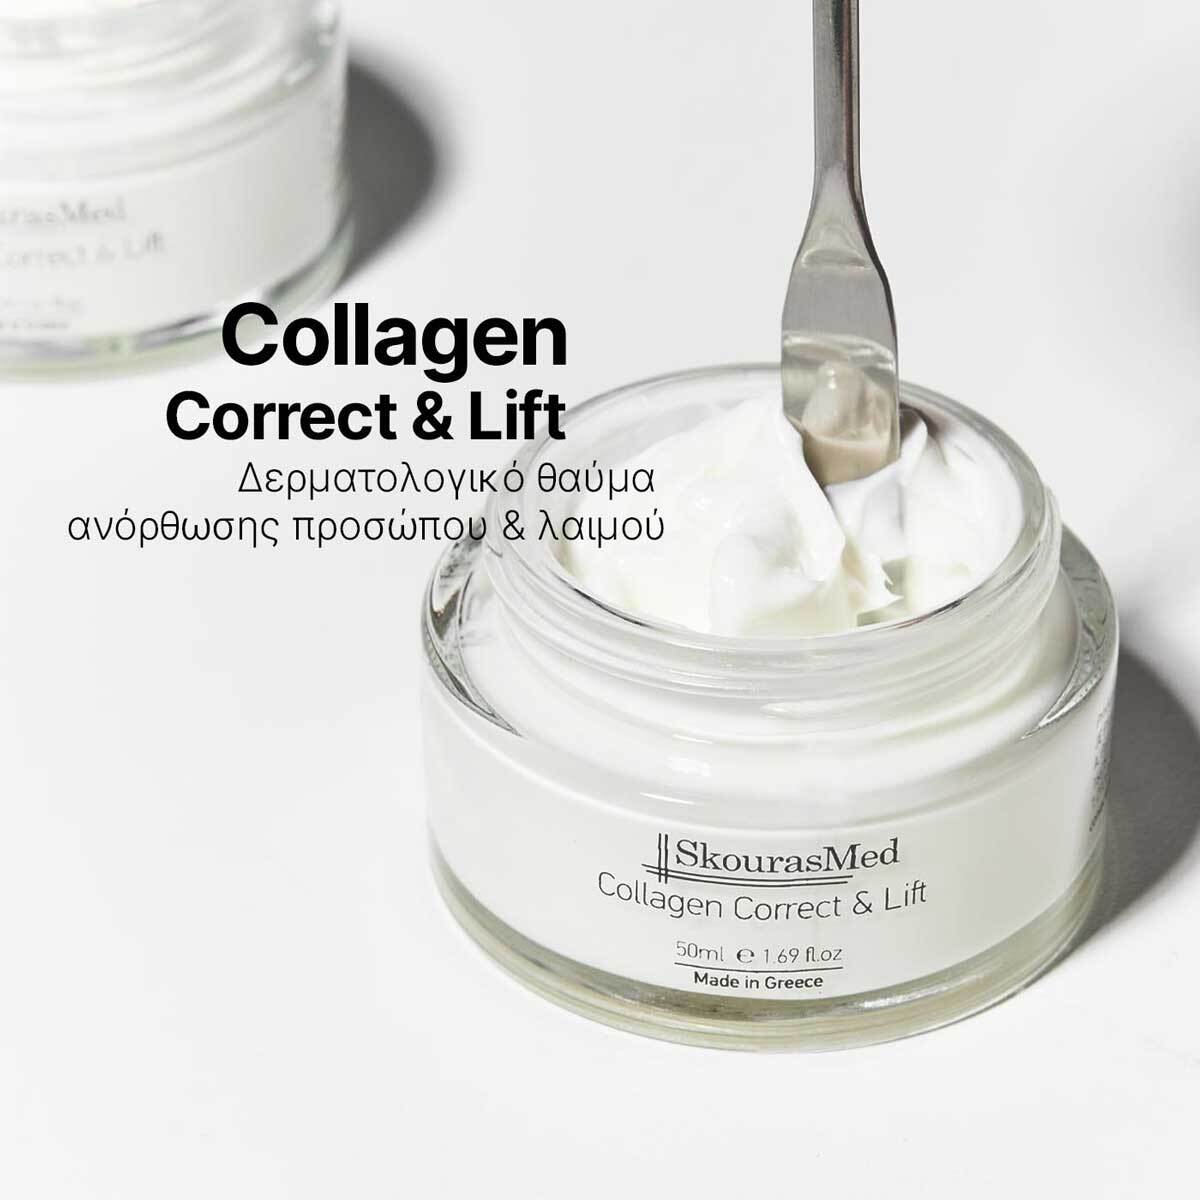 SkourasMed Collagen Correct & Lift